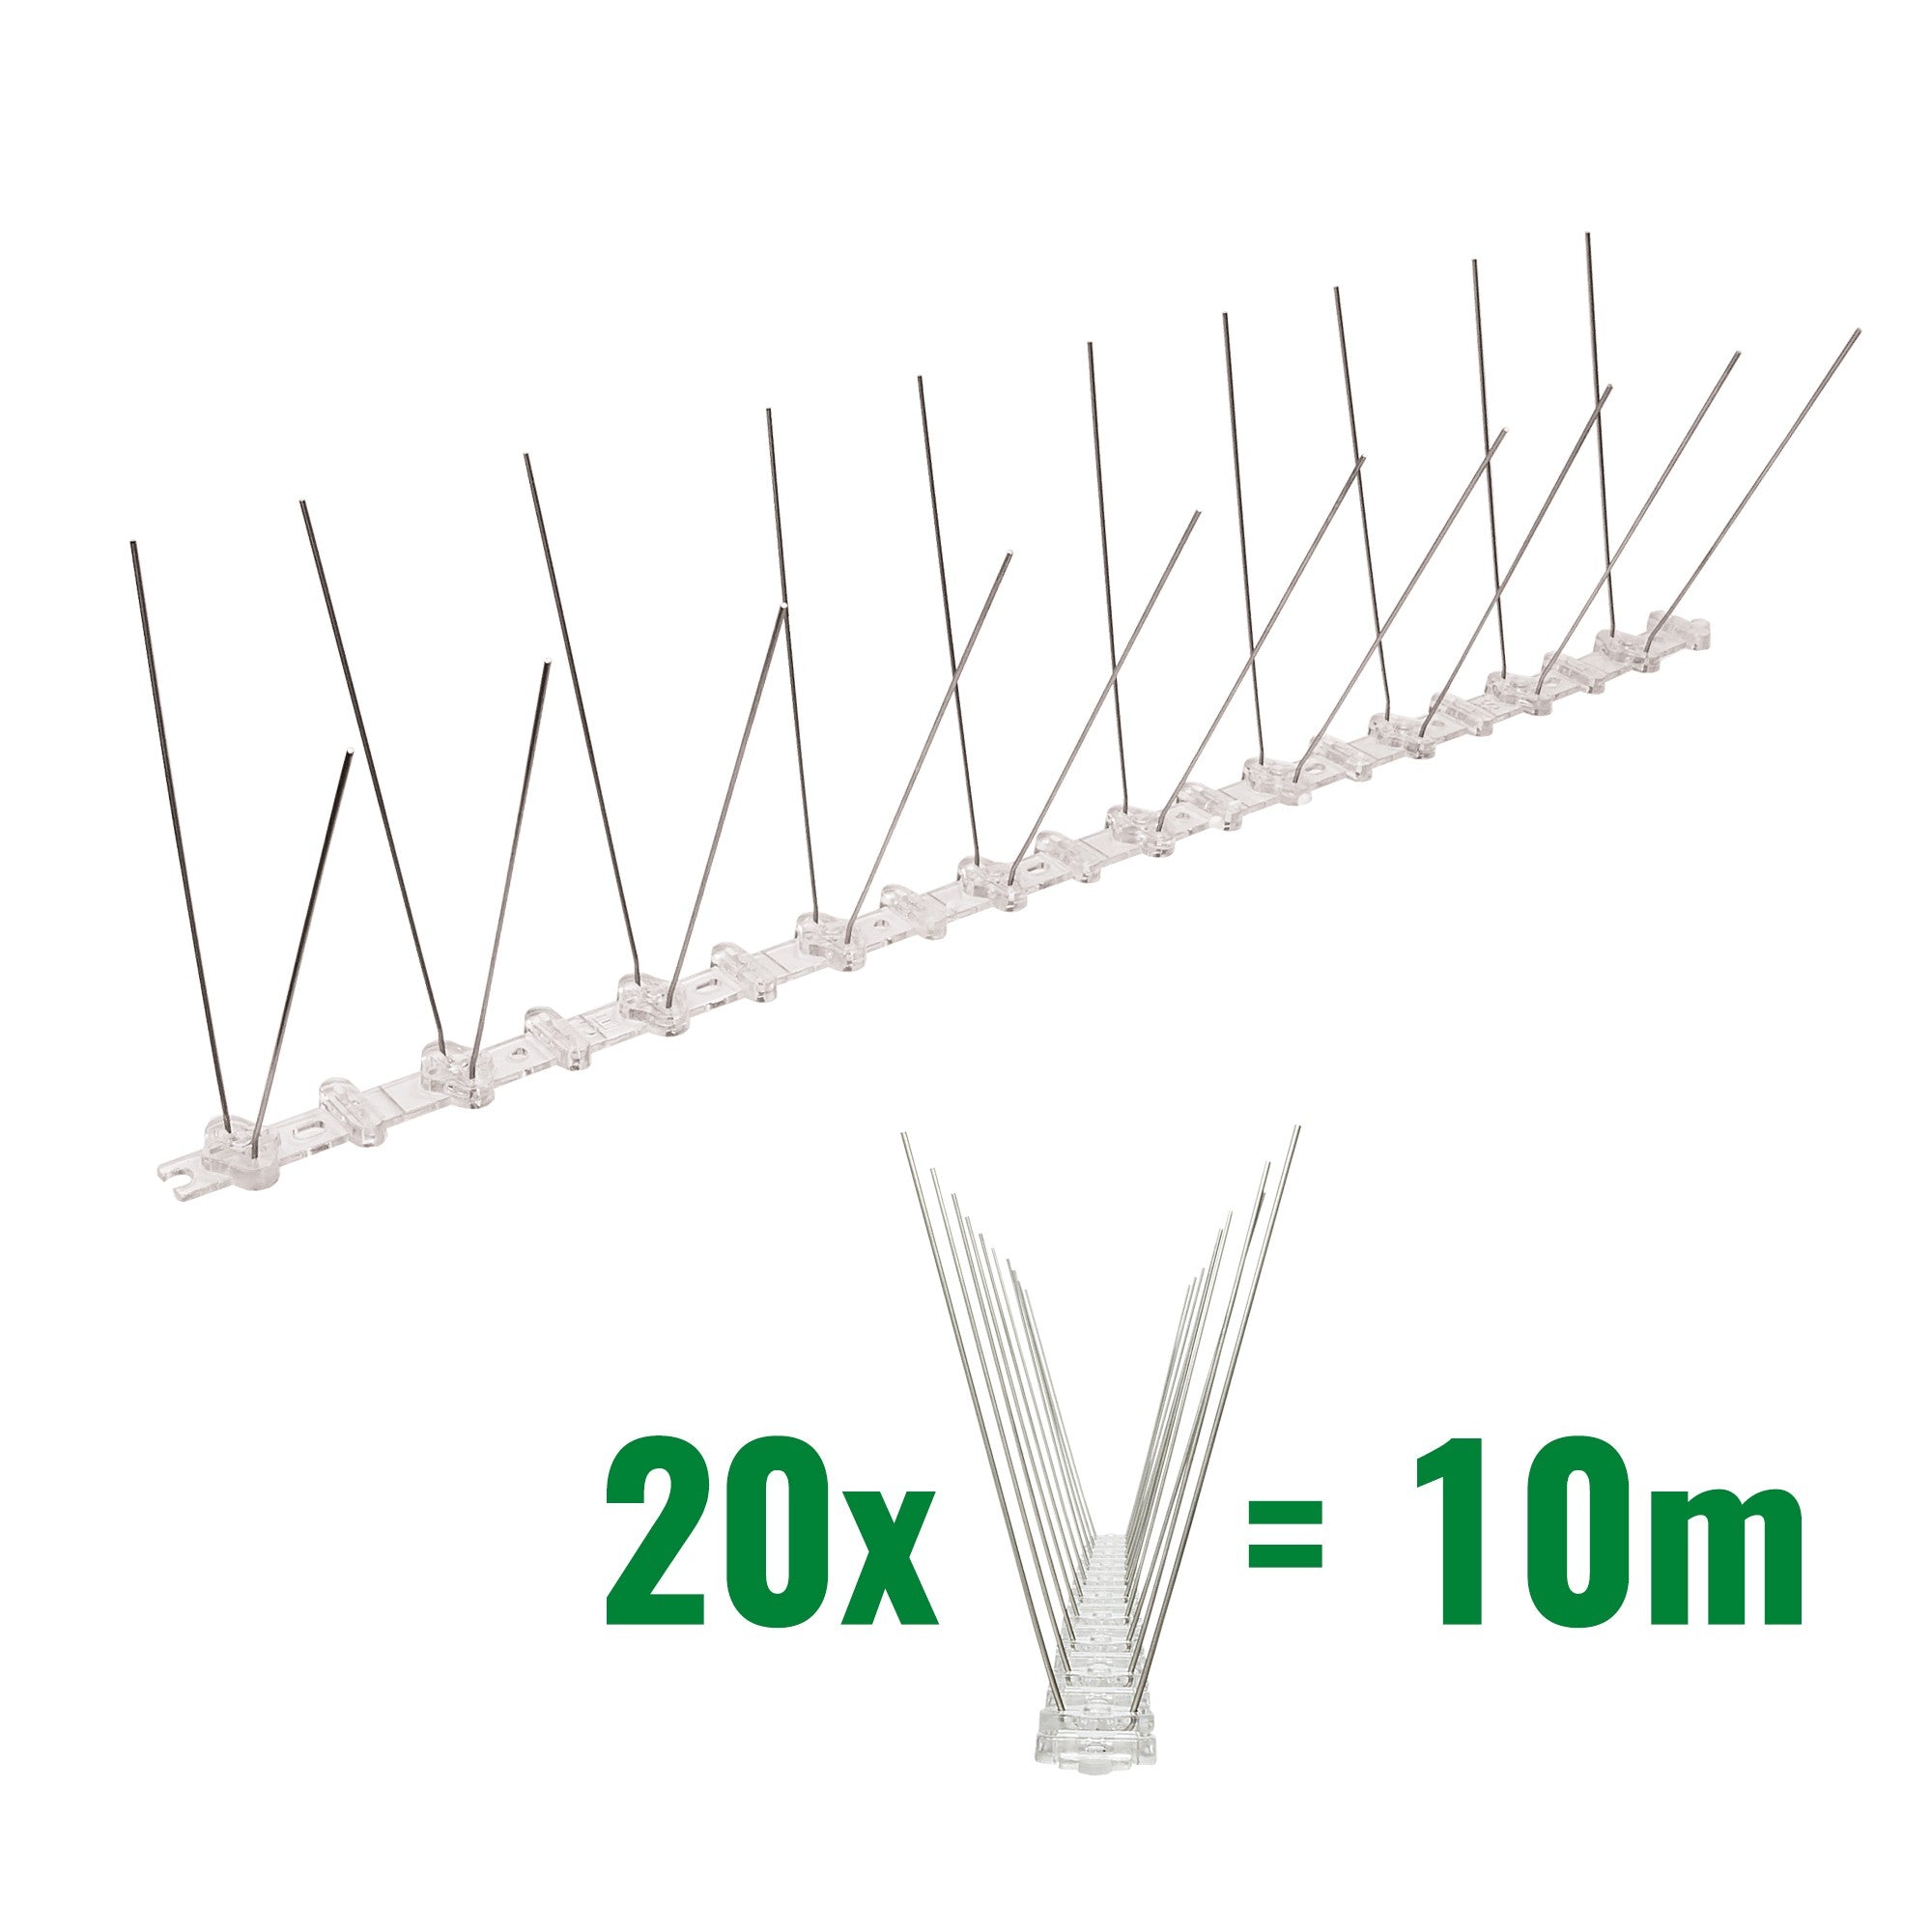 10 Meter (20 x 0,5m) Taubenspikes 2-reihig auf Polycarbonat - hochwertige Lösung für Vogelabwehr Taubenabwehr Spikes